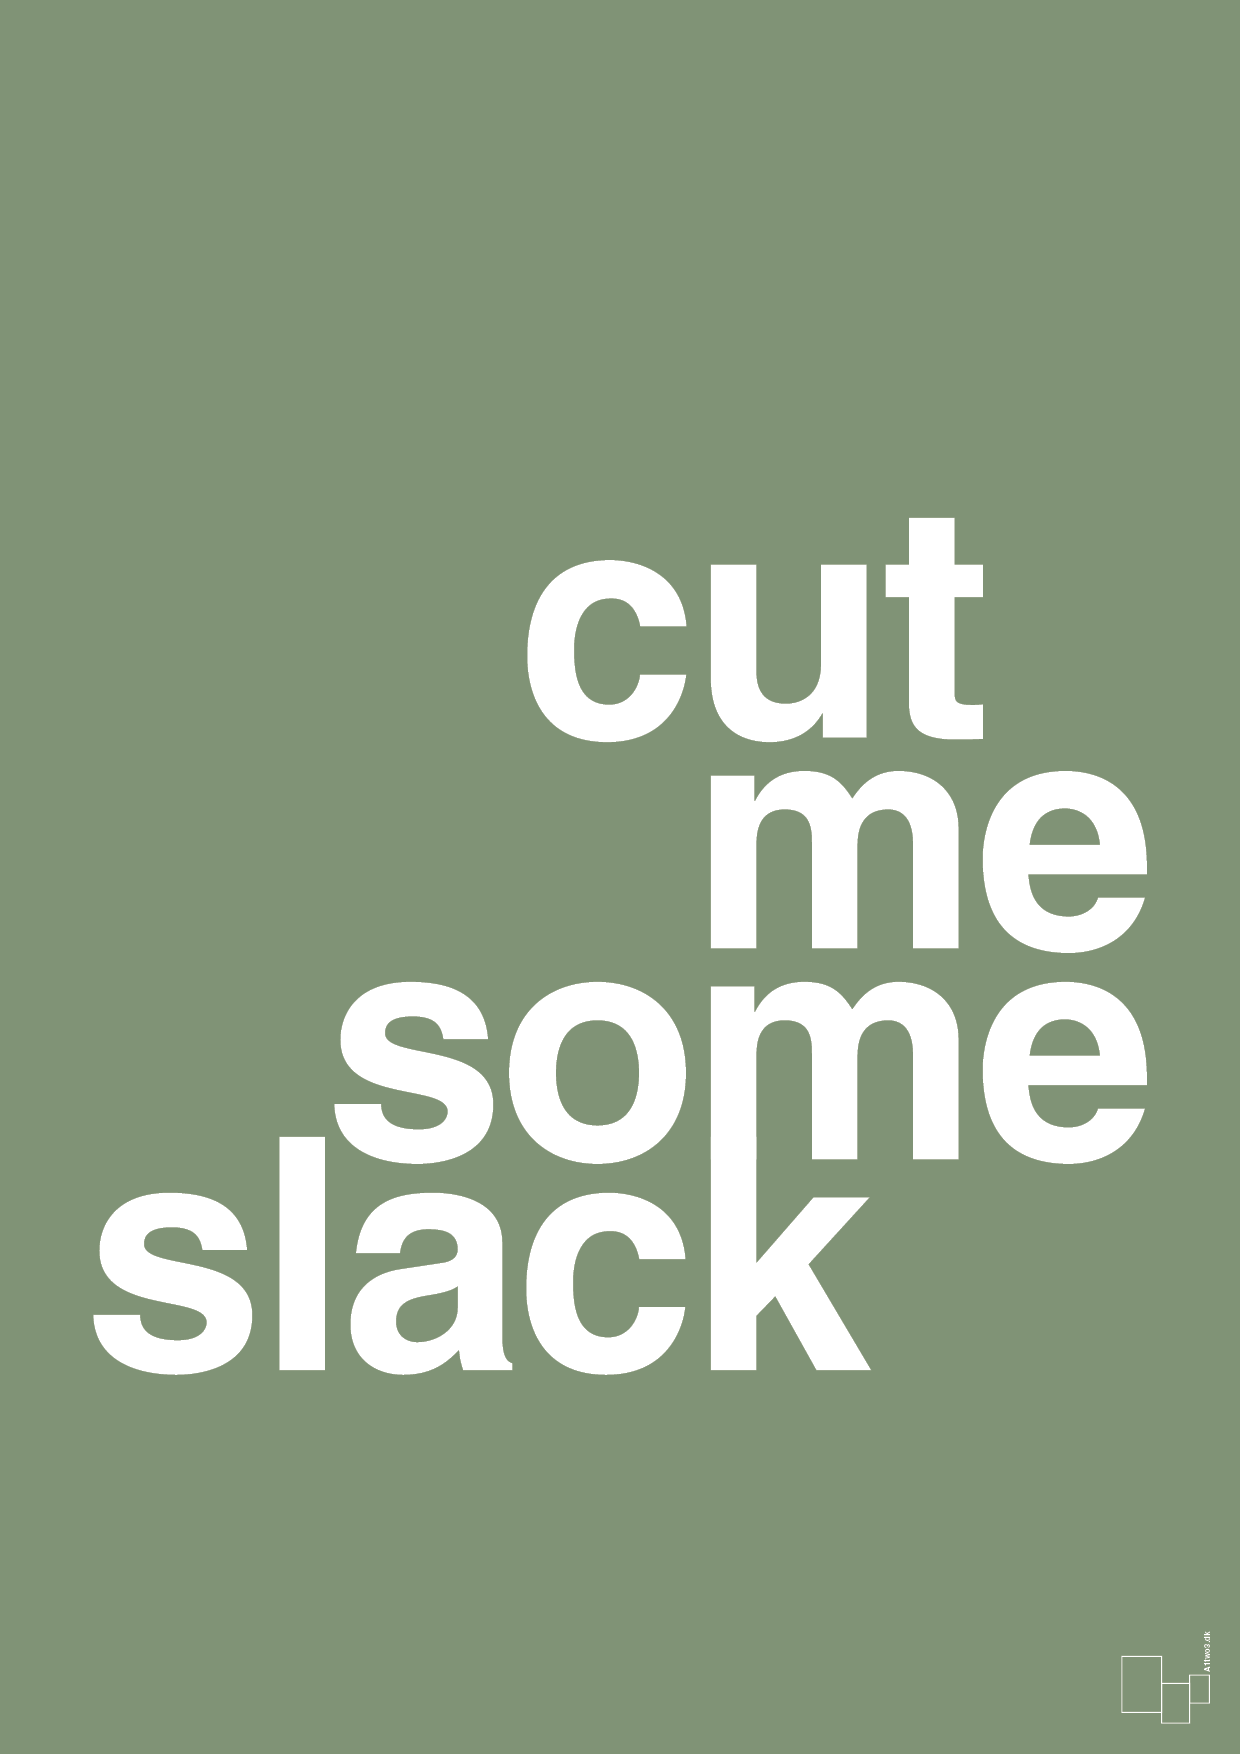 cut me some slack - Plakat med Ordsprog i Jade